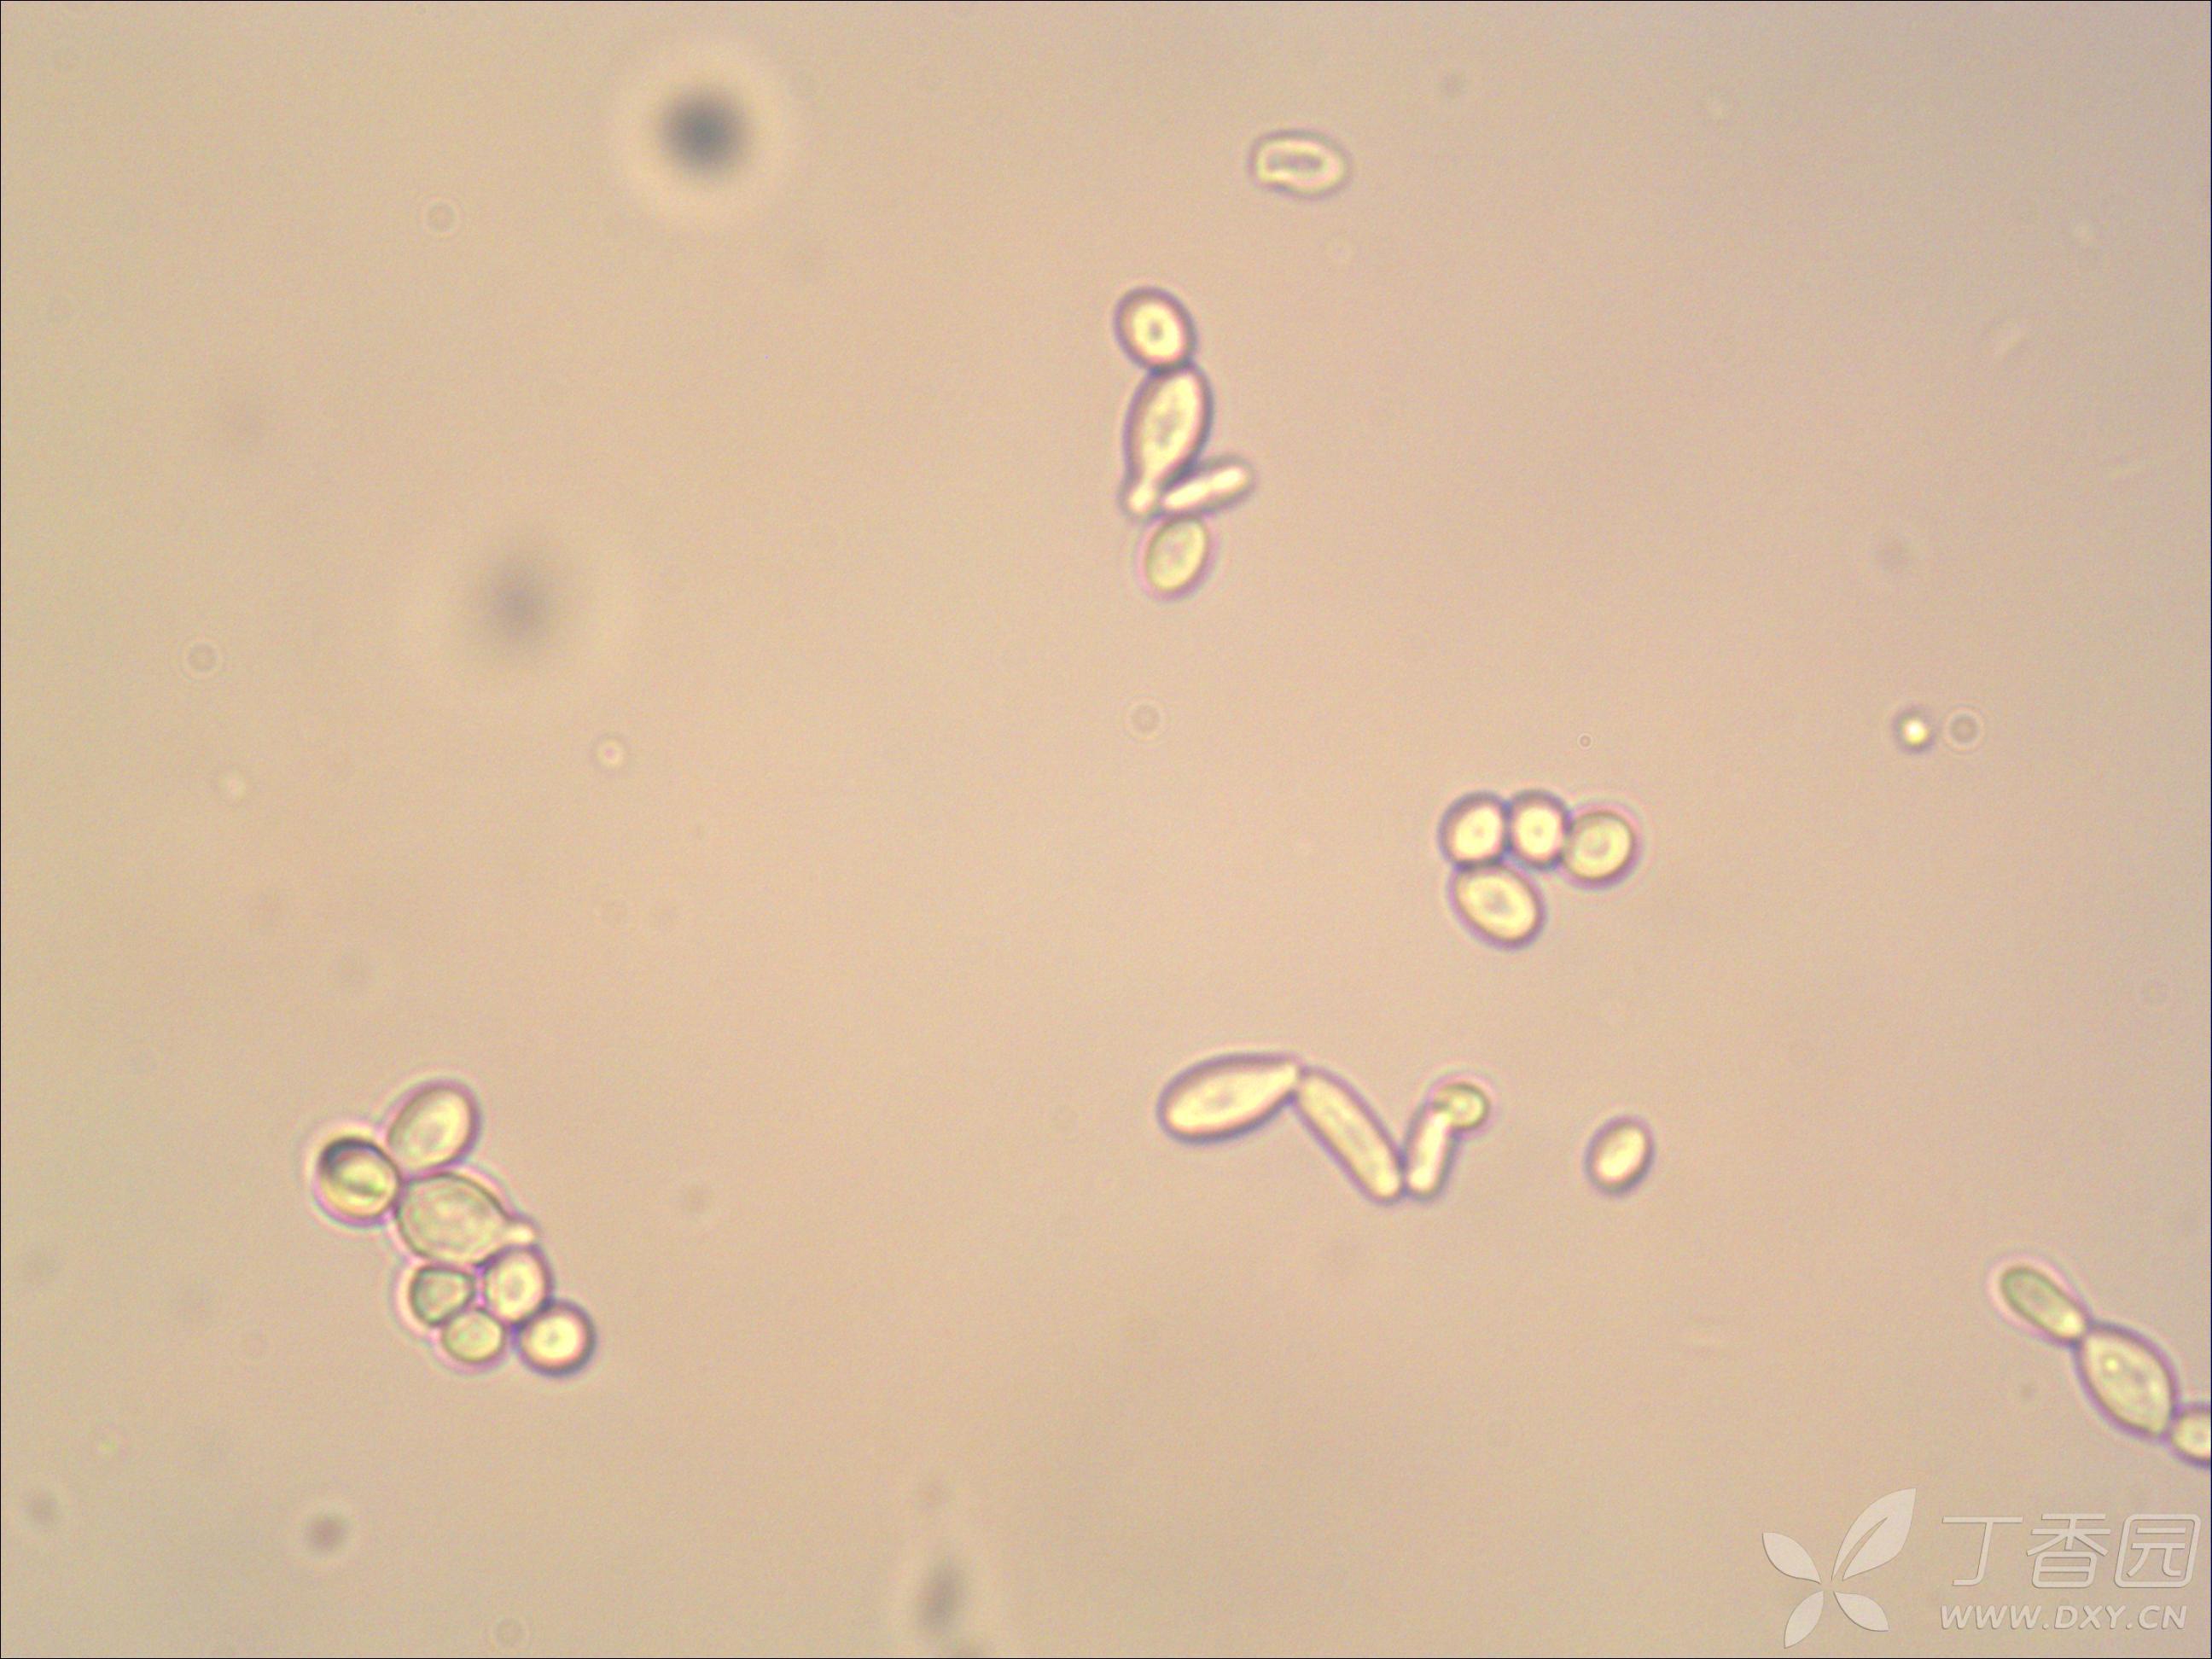 酵母菌结构图-图库-五毛网